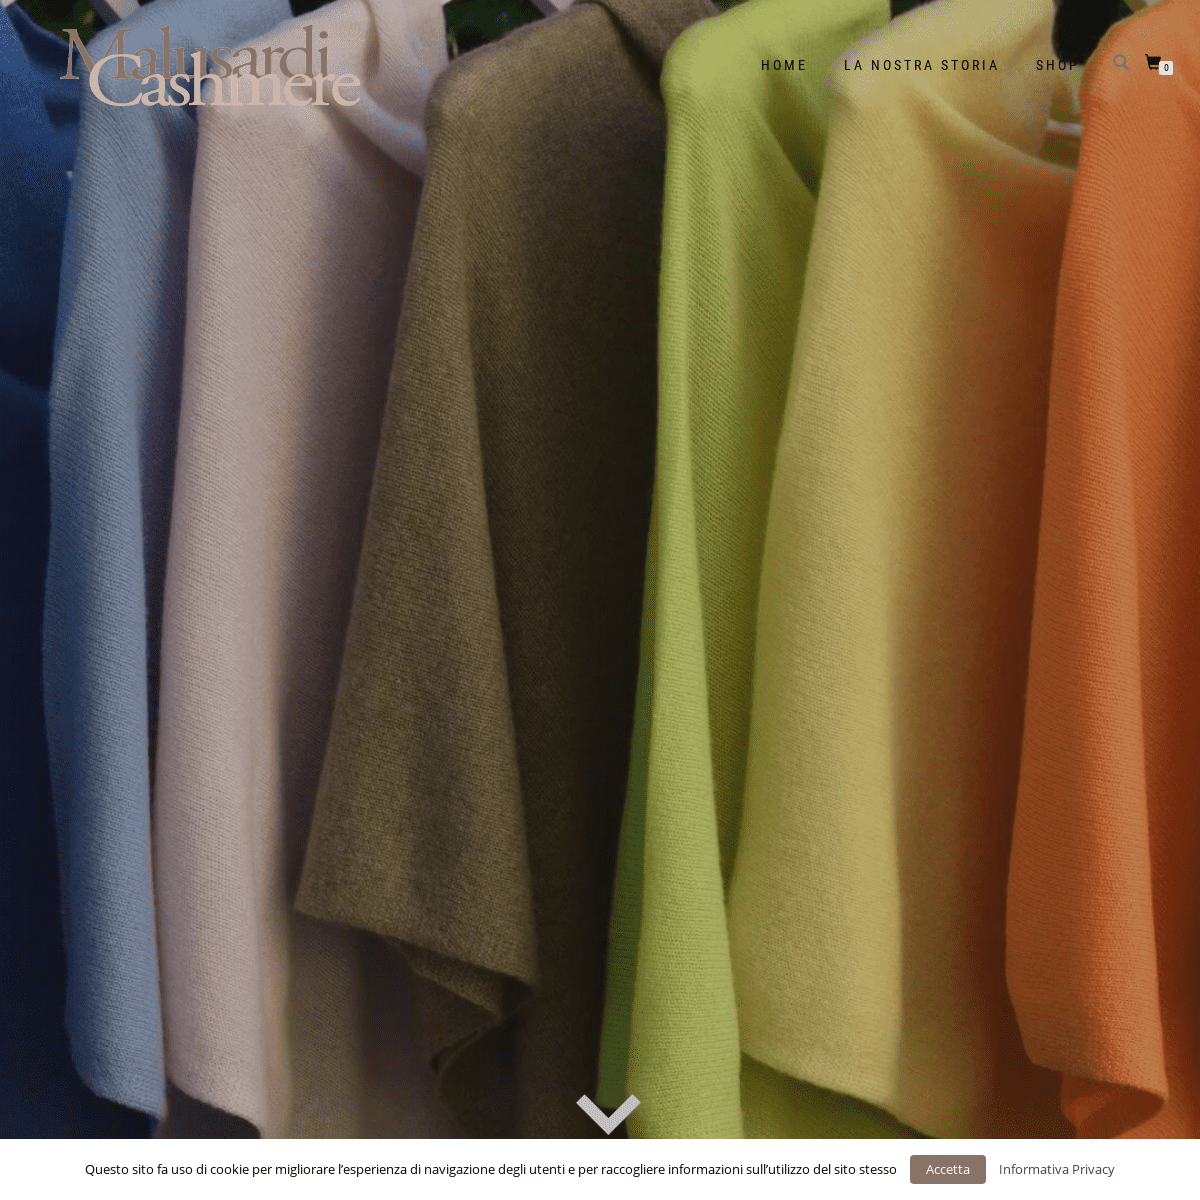 Malusardi Cashmere – Il cashmere in una boutique a portata di click